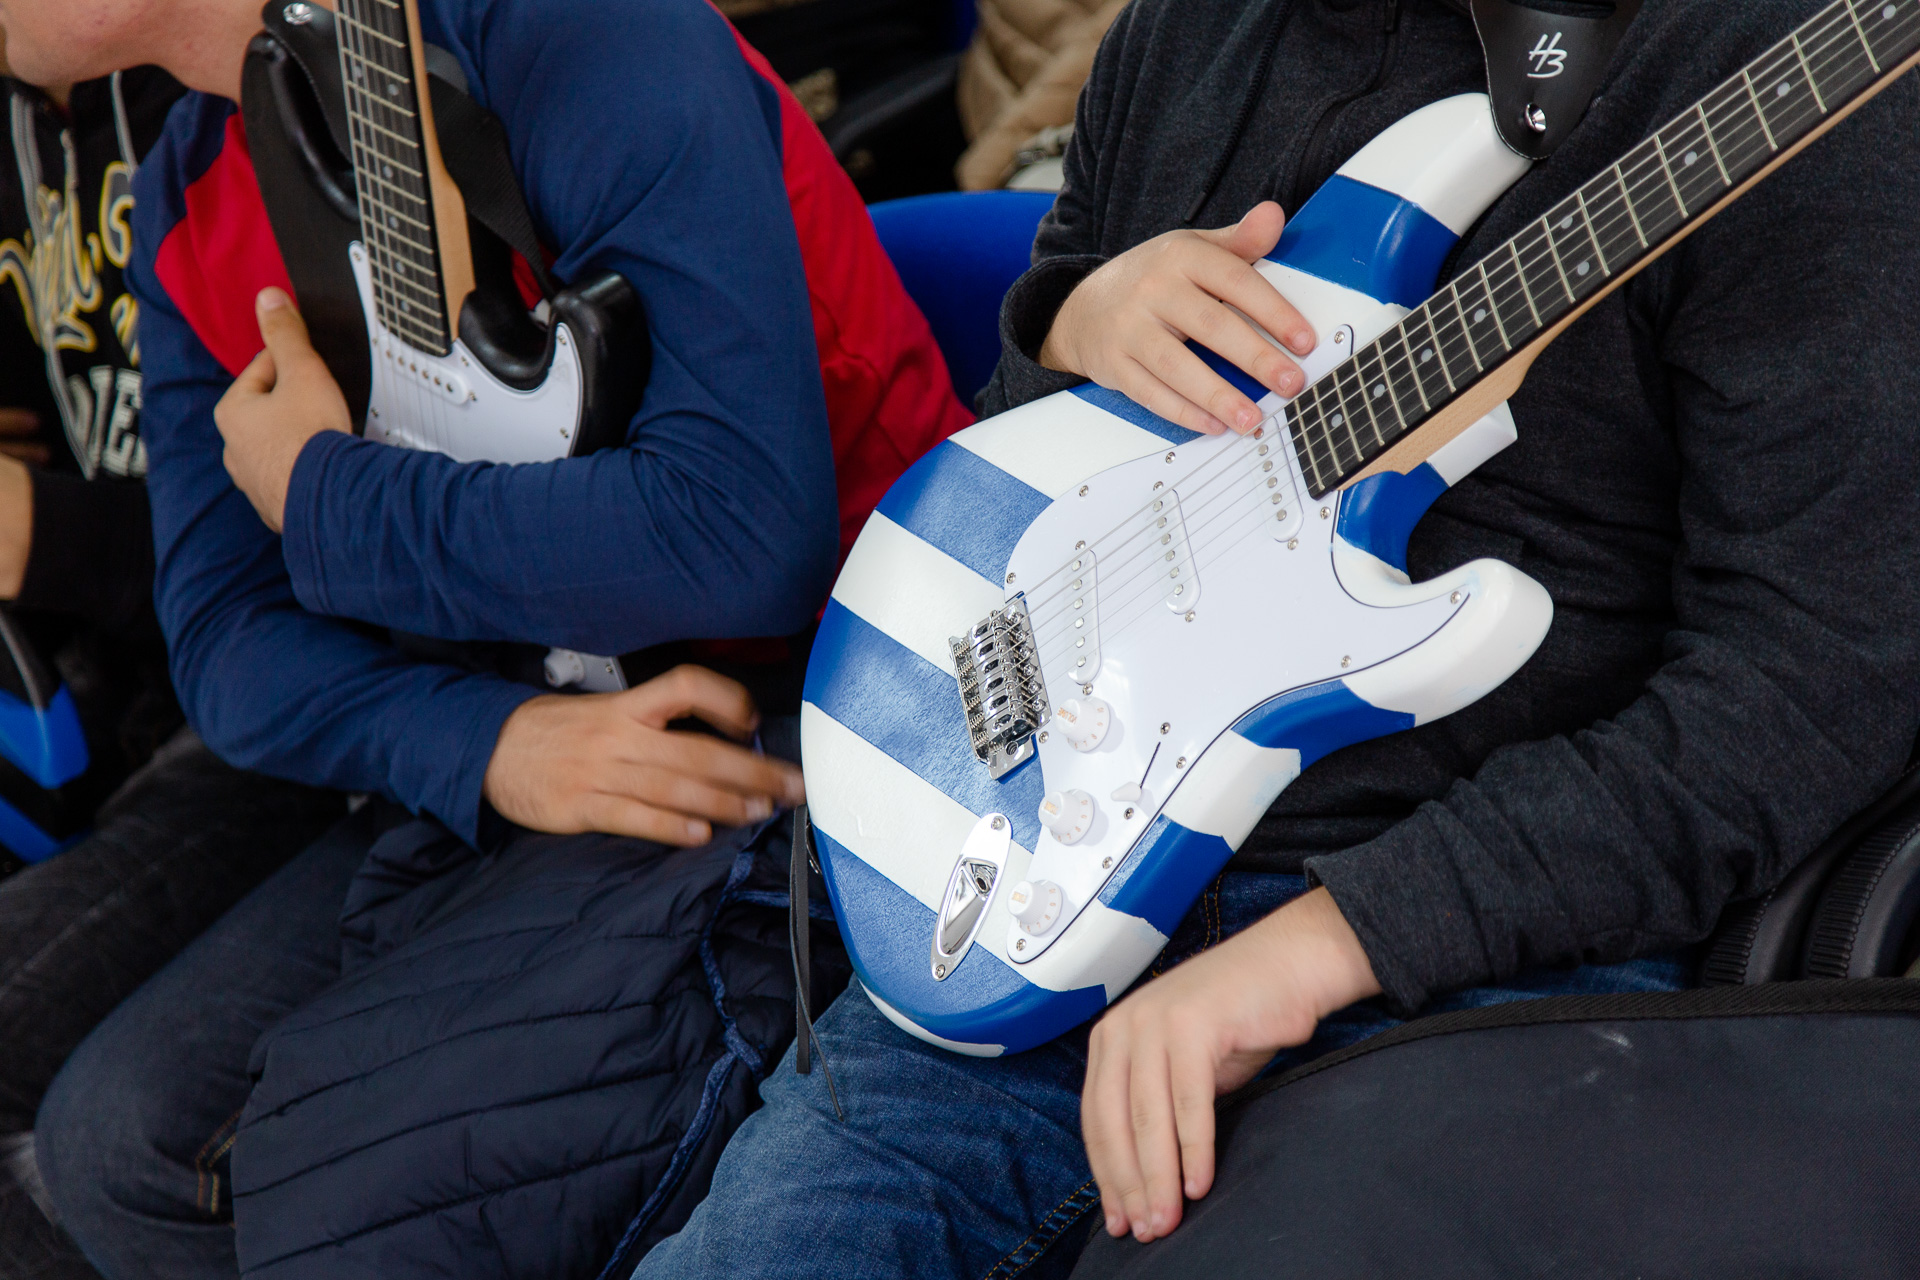 Le chitarre realizzate da ragazzi con autismo nel corso di un recente progetto